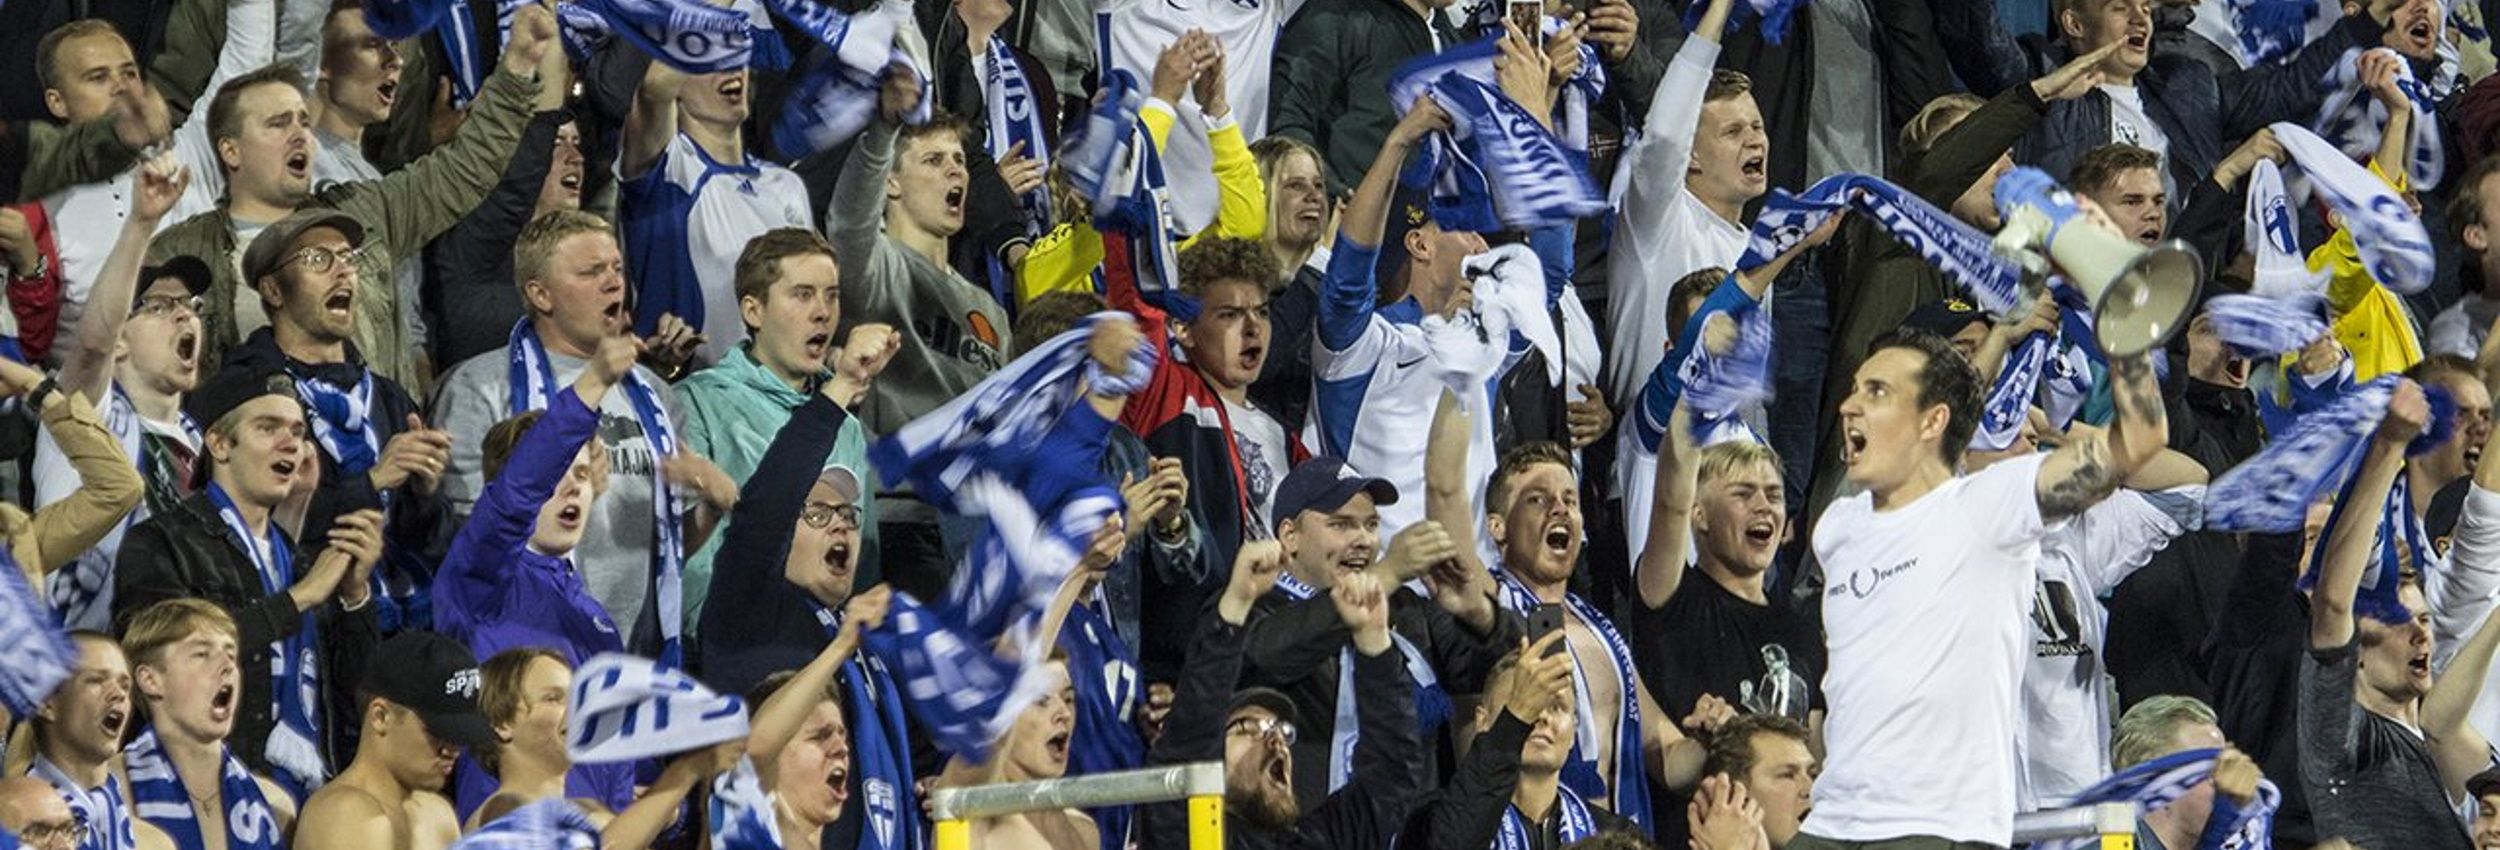 5.9.2019 Suomi - Kreikka EM-karsintaottelusta Ratinan Stadionilta Tampereelta. Capo kannustaa kuvassa katsomoa huutoon. Suomi voitti ottelun 1-0.